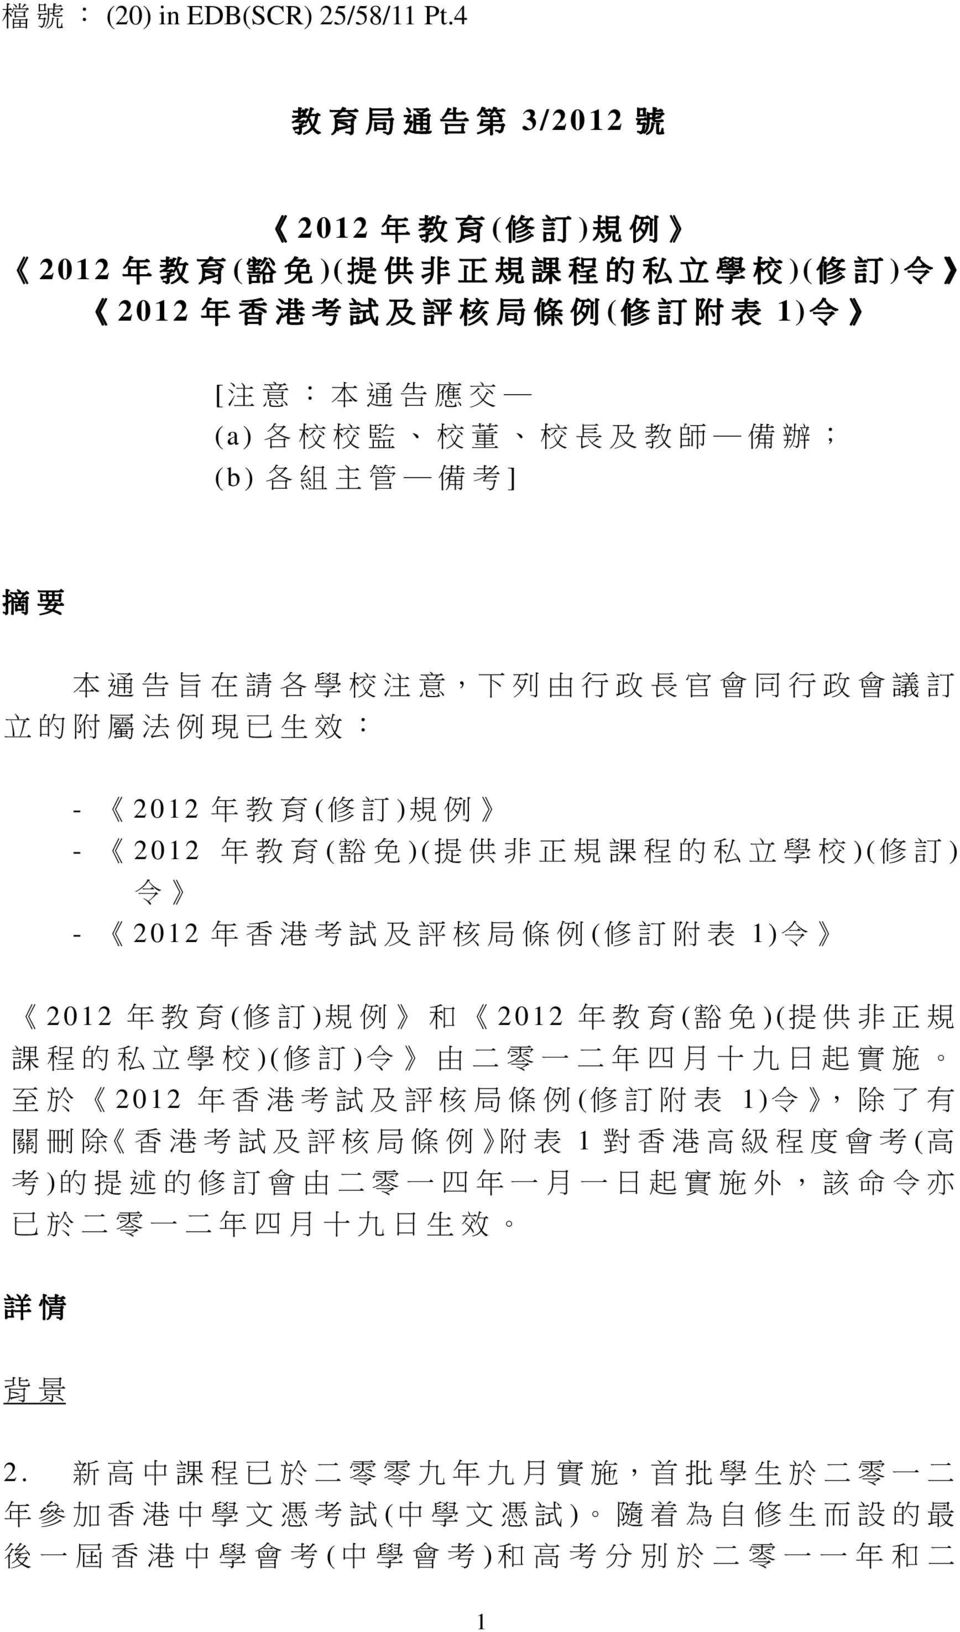 ) 各 組 主 管 備 考 ] 摘 要 本 通 告 旨 在 請 各 學 校 注 意, 下 列 由 行 政 長 官 會 同 行 政 會 議 訂 立 的 附 屬 法 例 現 已 生 效 : - 2012 年 教 育 ( 修 訂 ) 規 例 - 2012 年 教 育 ( 豁 免 ) ( 提 供 非 正 規 課 程 的 私 立 學 校 ) ( 修 訂 ) 令 - 2012 年 香 港 考 試 及 評 核